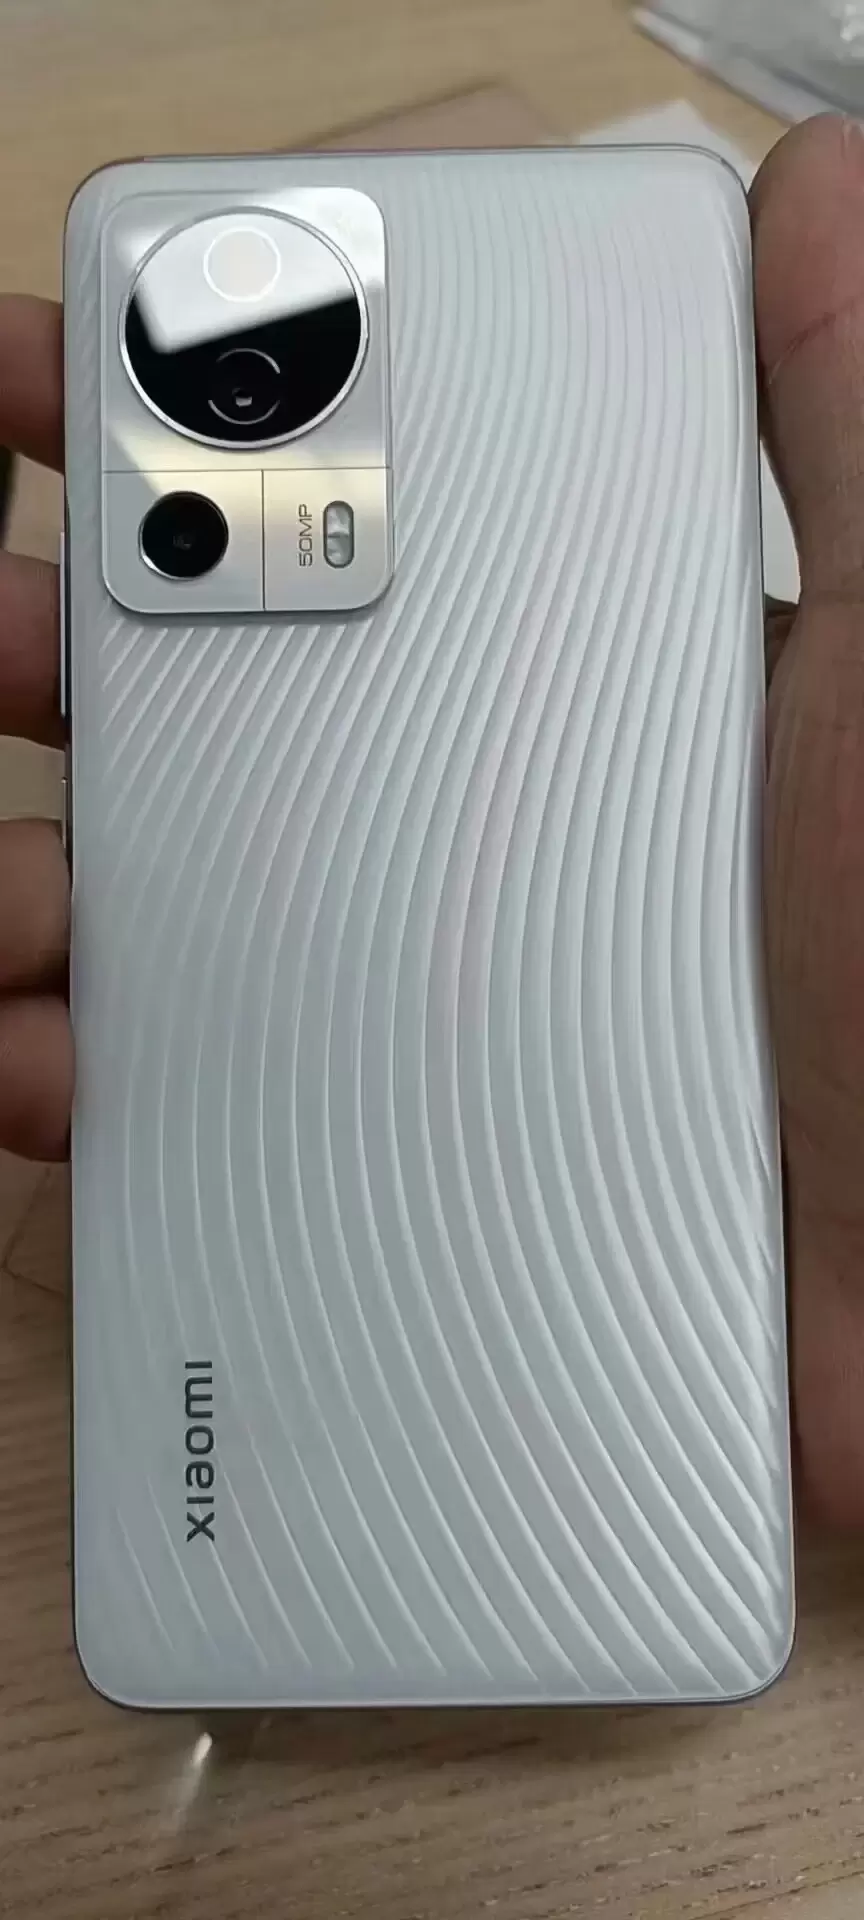 Новый смартфон Xiaomi c айфоноподобным вырезом показали на «живых» фото